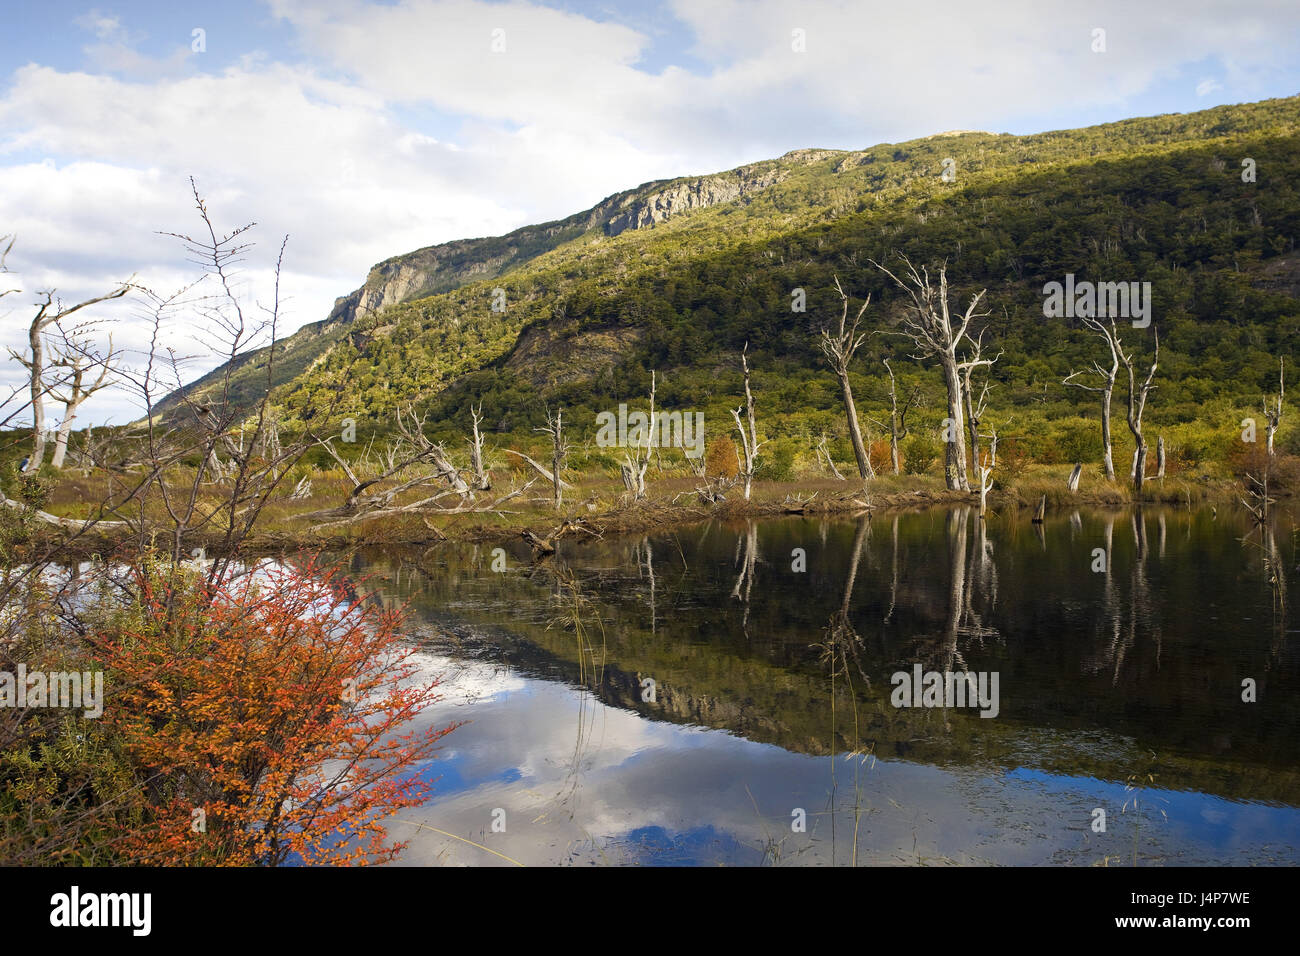 Argentina, Tierra del Fuego, scenery, brook, meadows, trees, deadly, Stock Photo